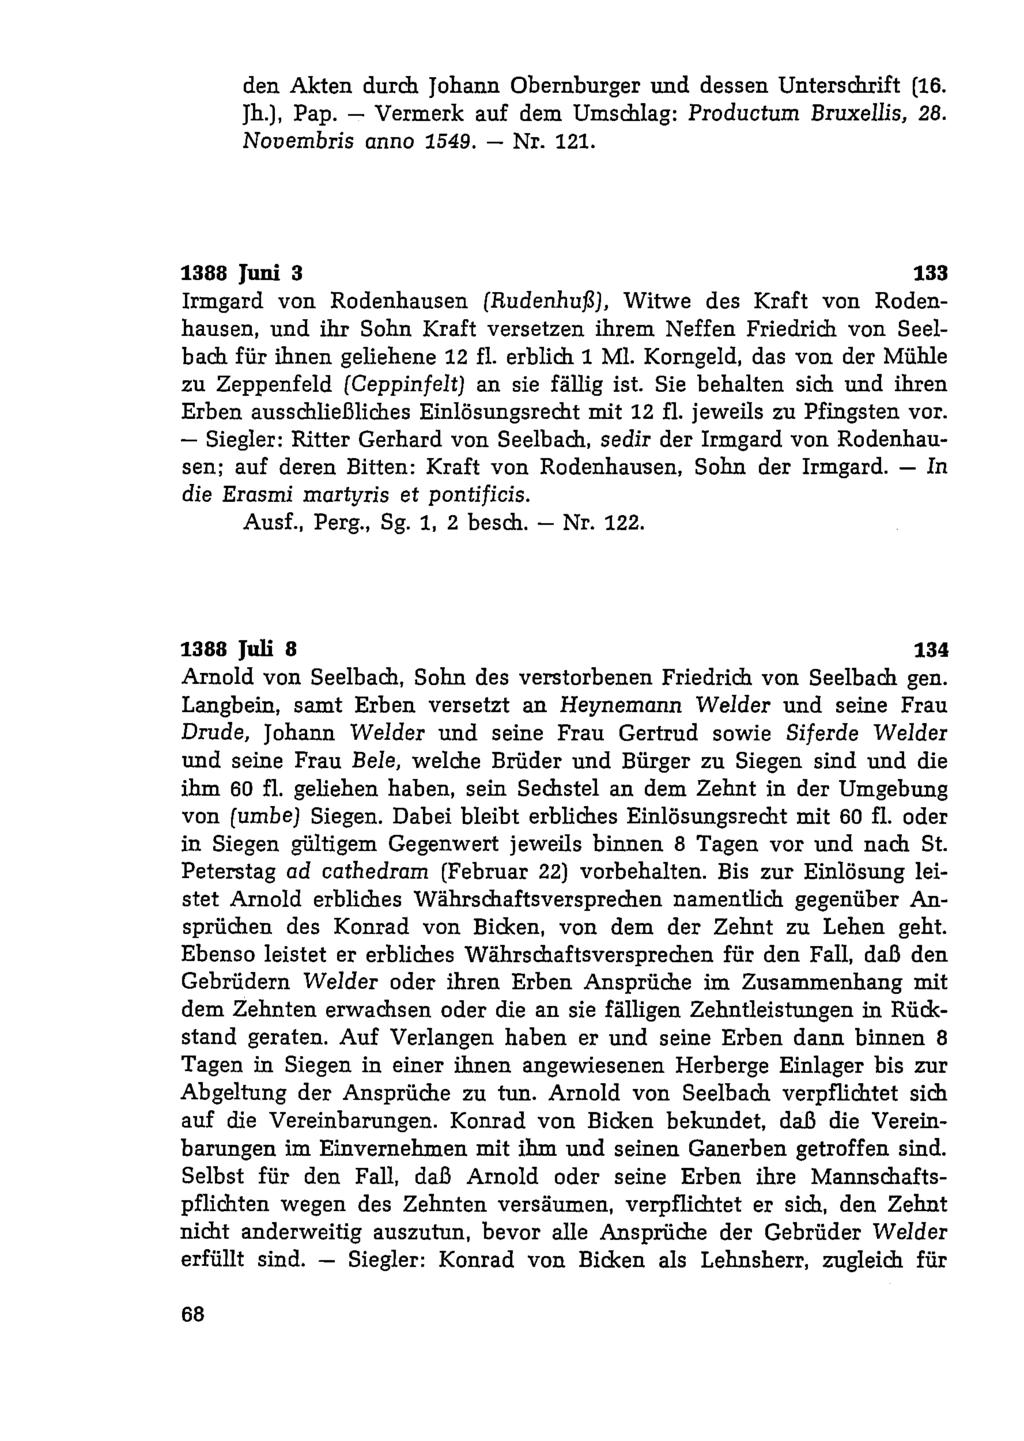 den Akten durch Johann Obernburger und dessen Unterschrift (16. Jh.), Pap. - Vermerk auf dem Umschlag: Producturn Bruxellis, 28. Nouembris anno 1549. - Nr. 121.